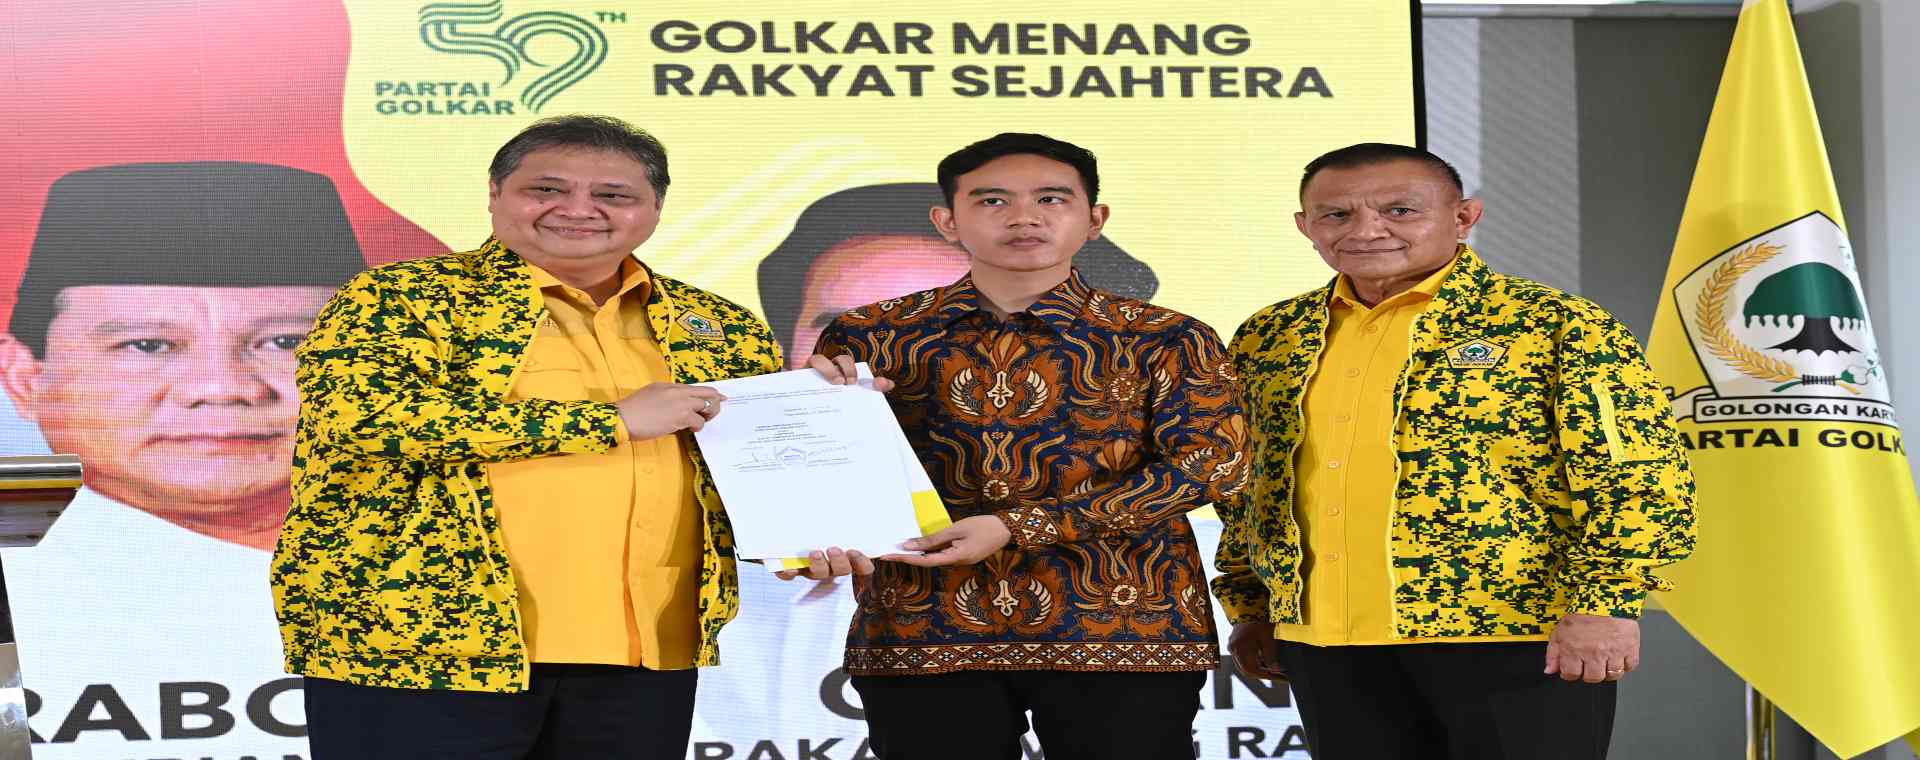  Prabowo Sesumbar Ada Menteri Jokowi Neo Liberal, Airlangga: Itu Drakor